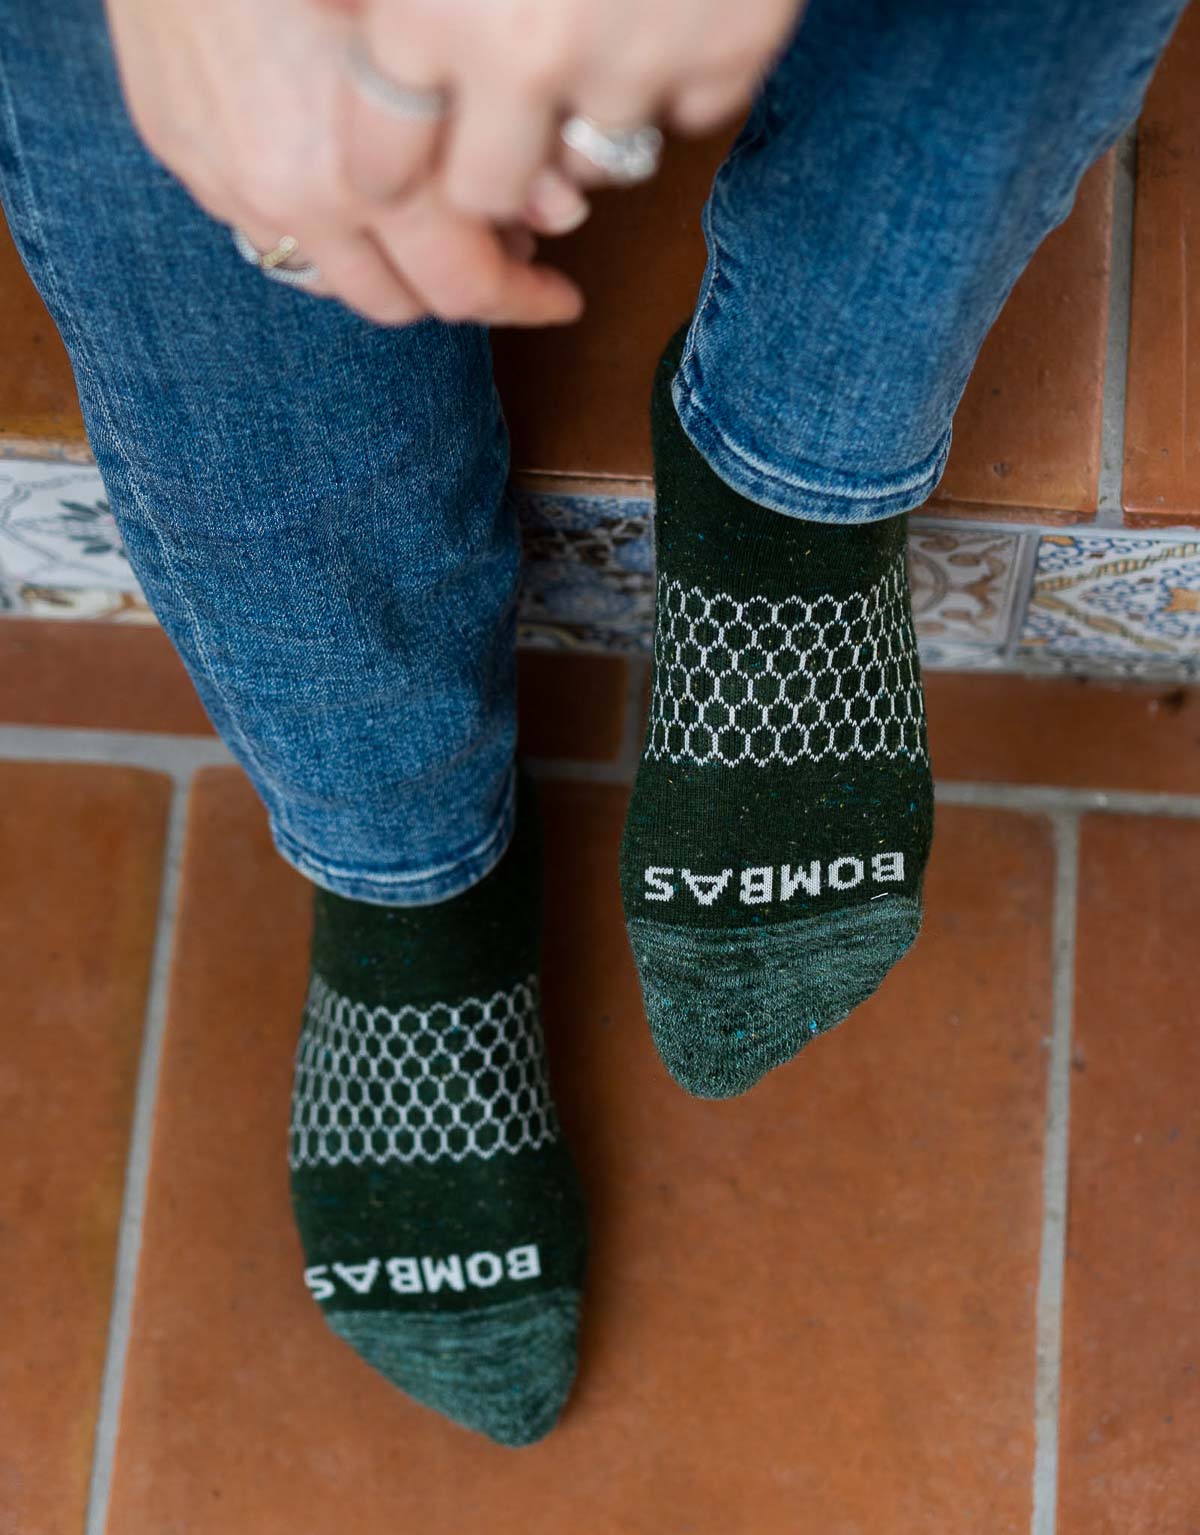 Sustainable Socks - Bombas socks - feet in green Bombas socks on Tile steps